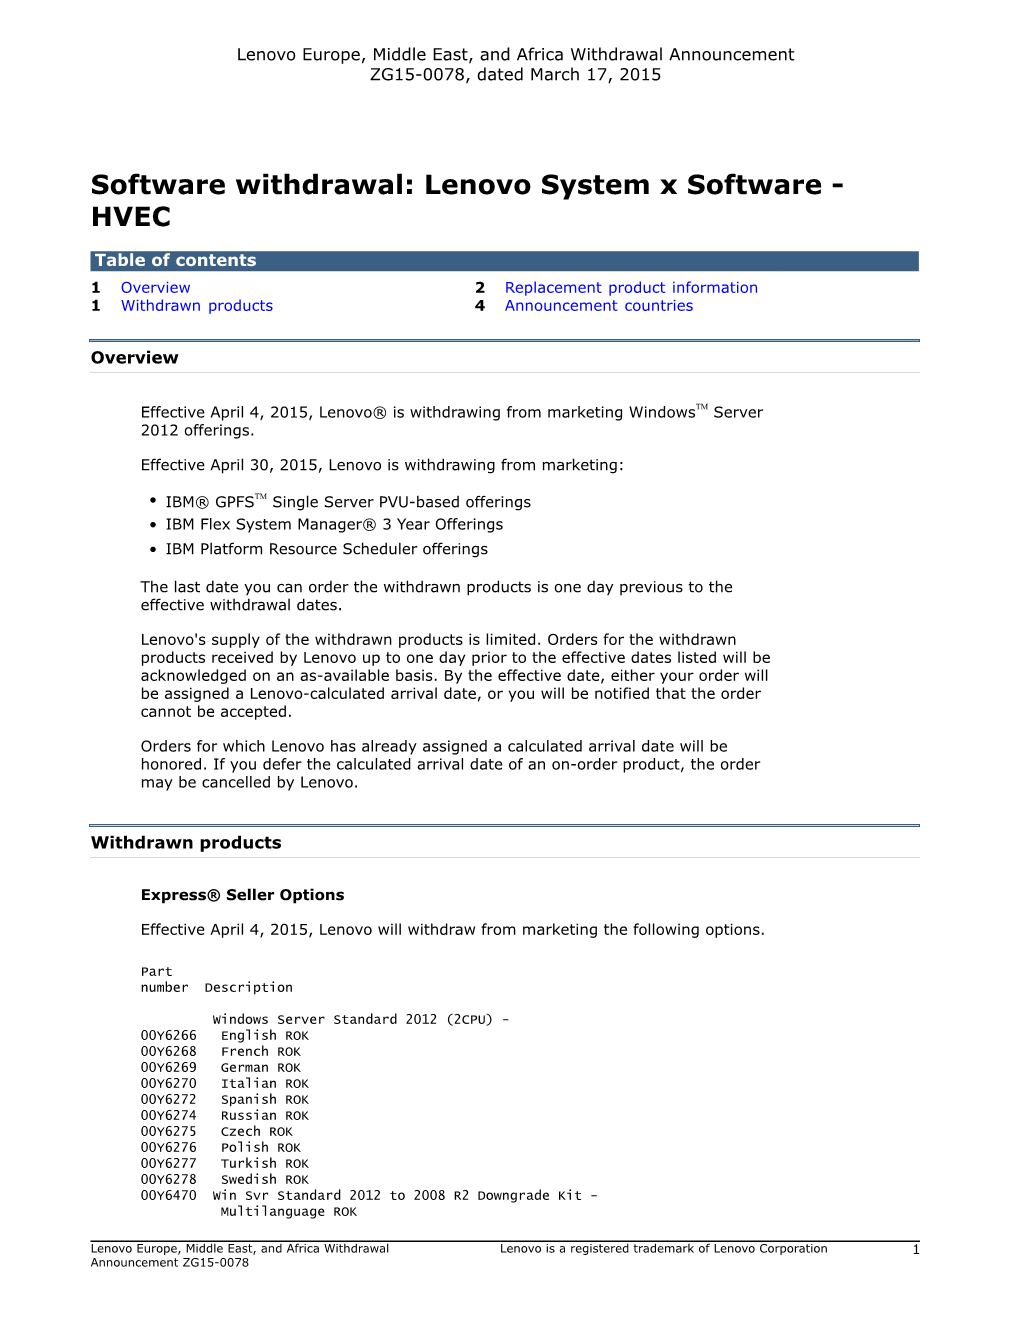 Lenovo System X Software - HVEC